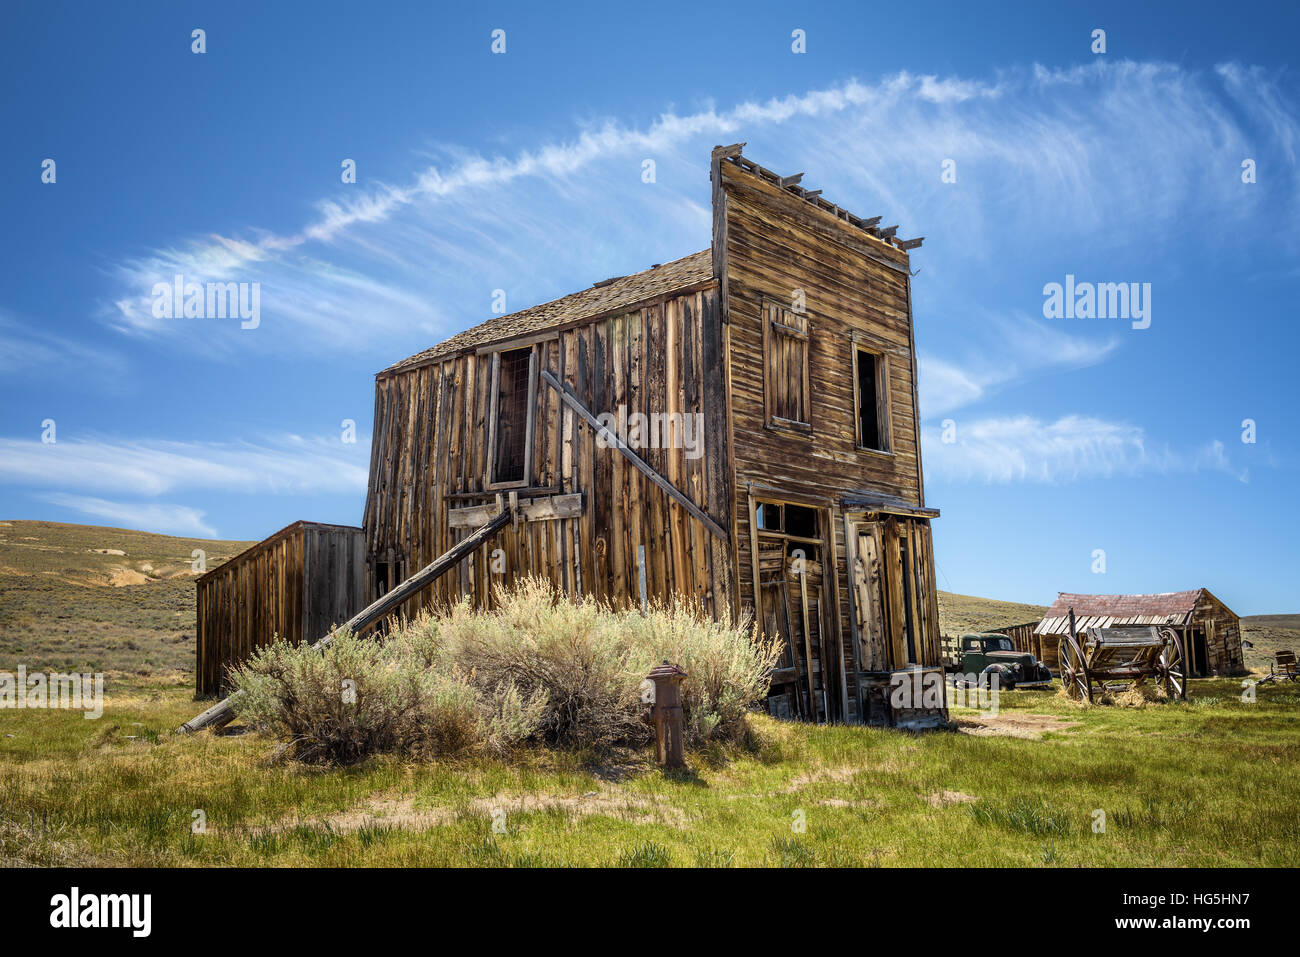 Bodie ghost town in California. Bodie è uno storico parco dello stato da un Gold Rush era nelle colline Bodie est della Sierra Nevada Foto Stock